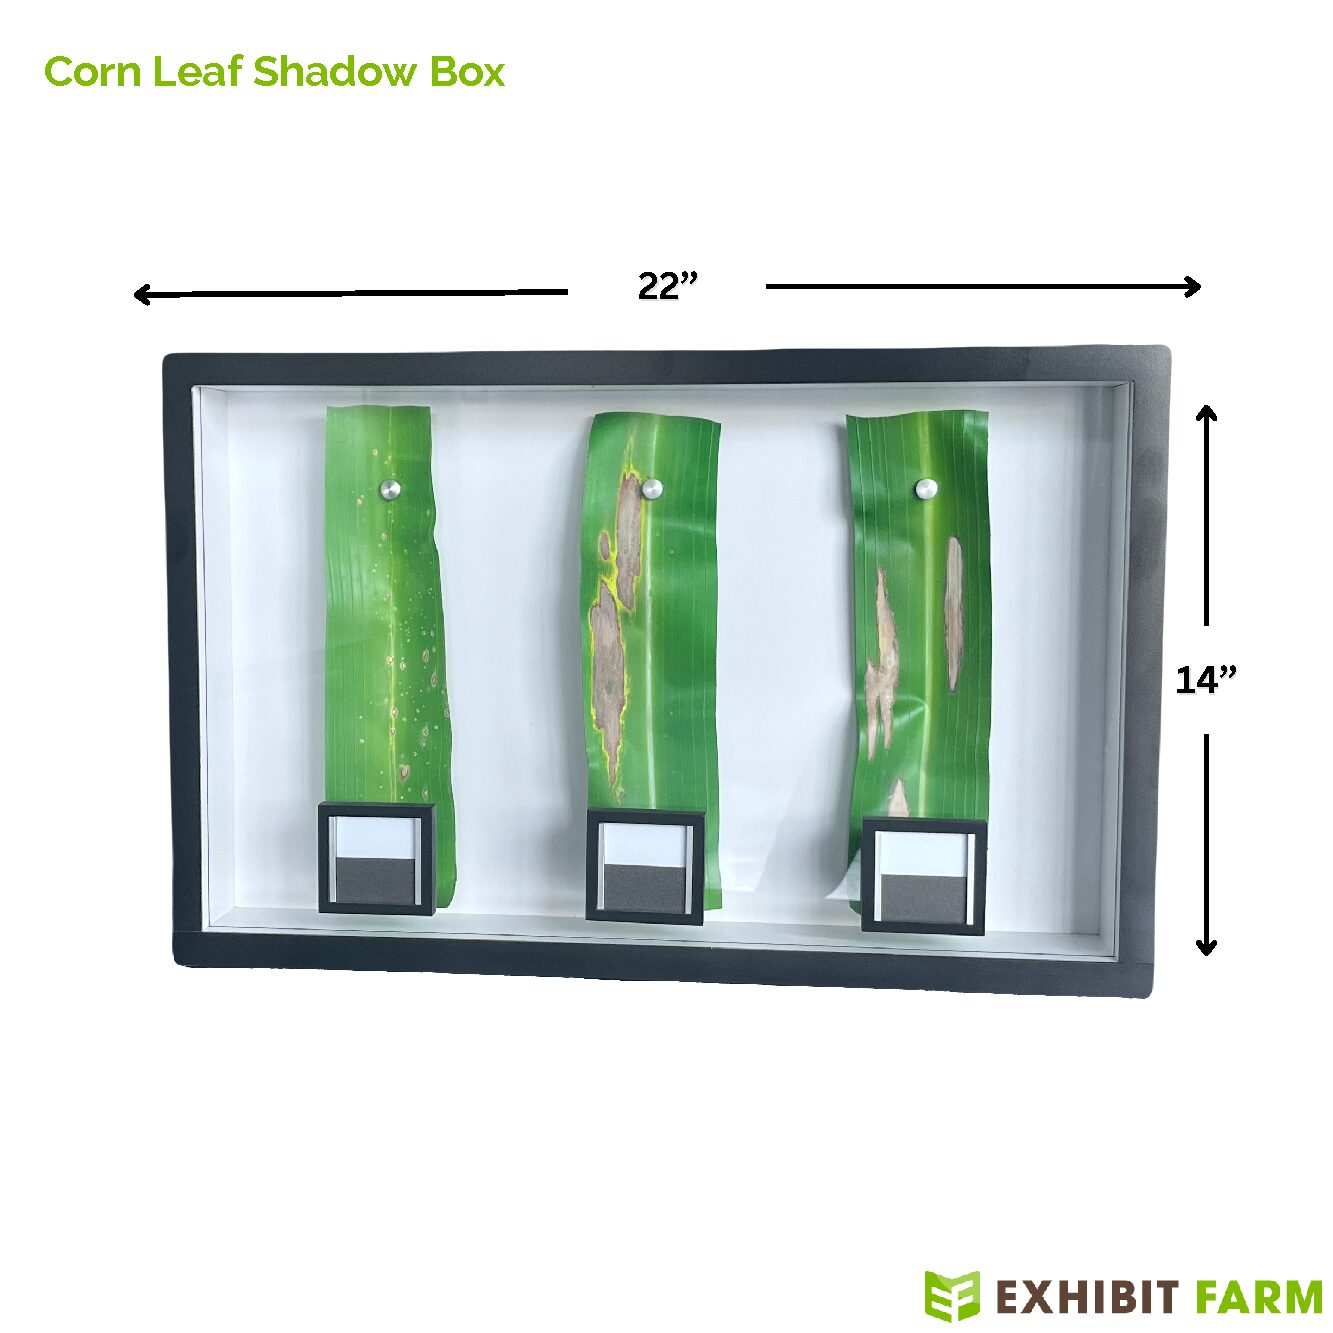 Corn Leaf Shadow Box main